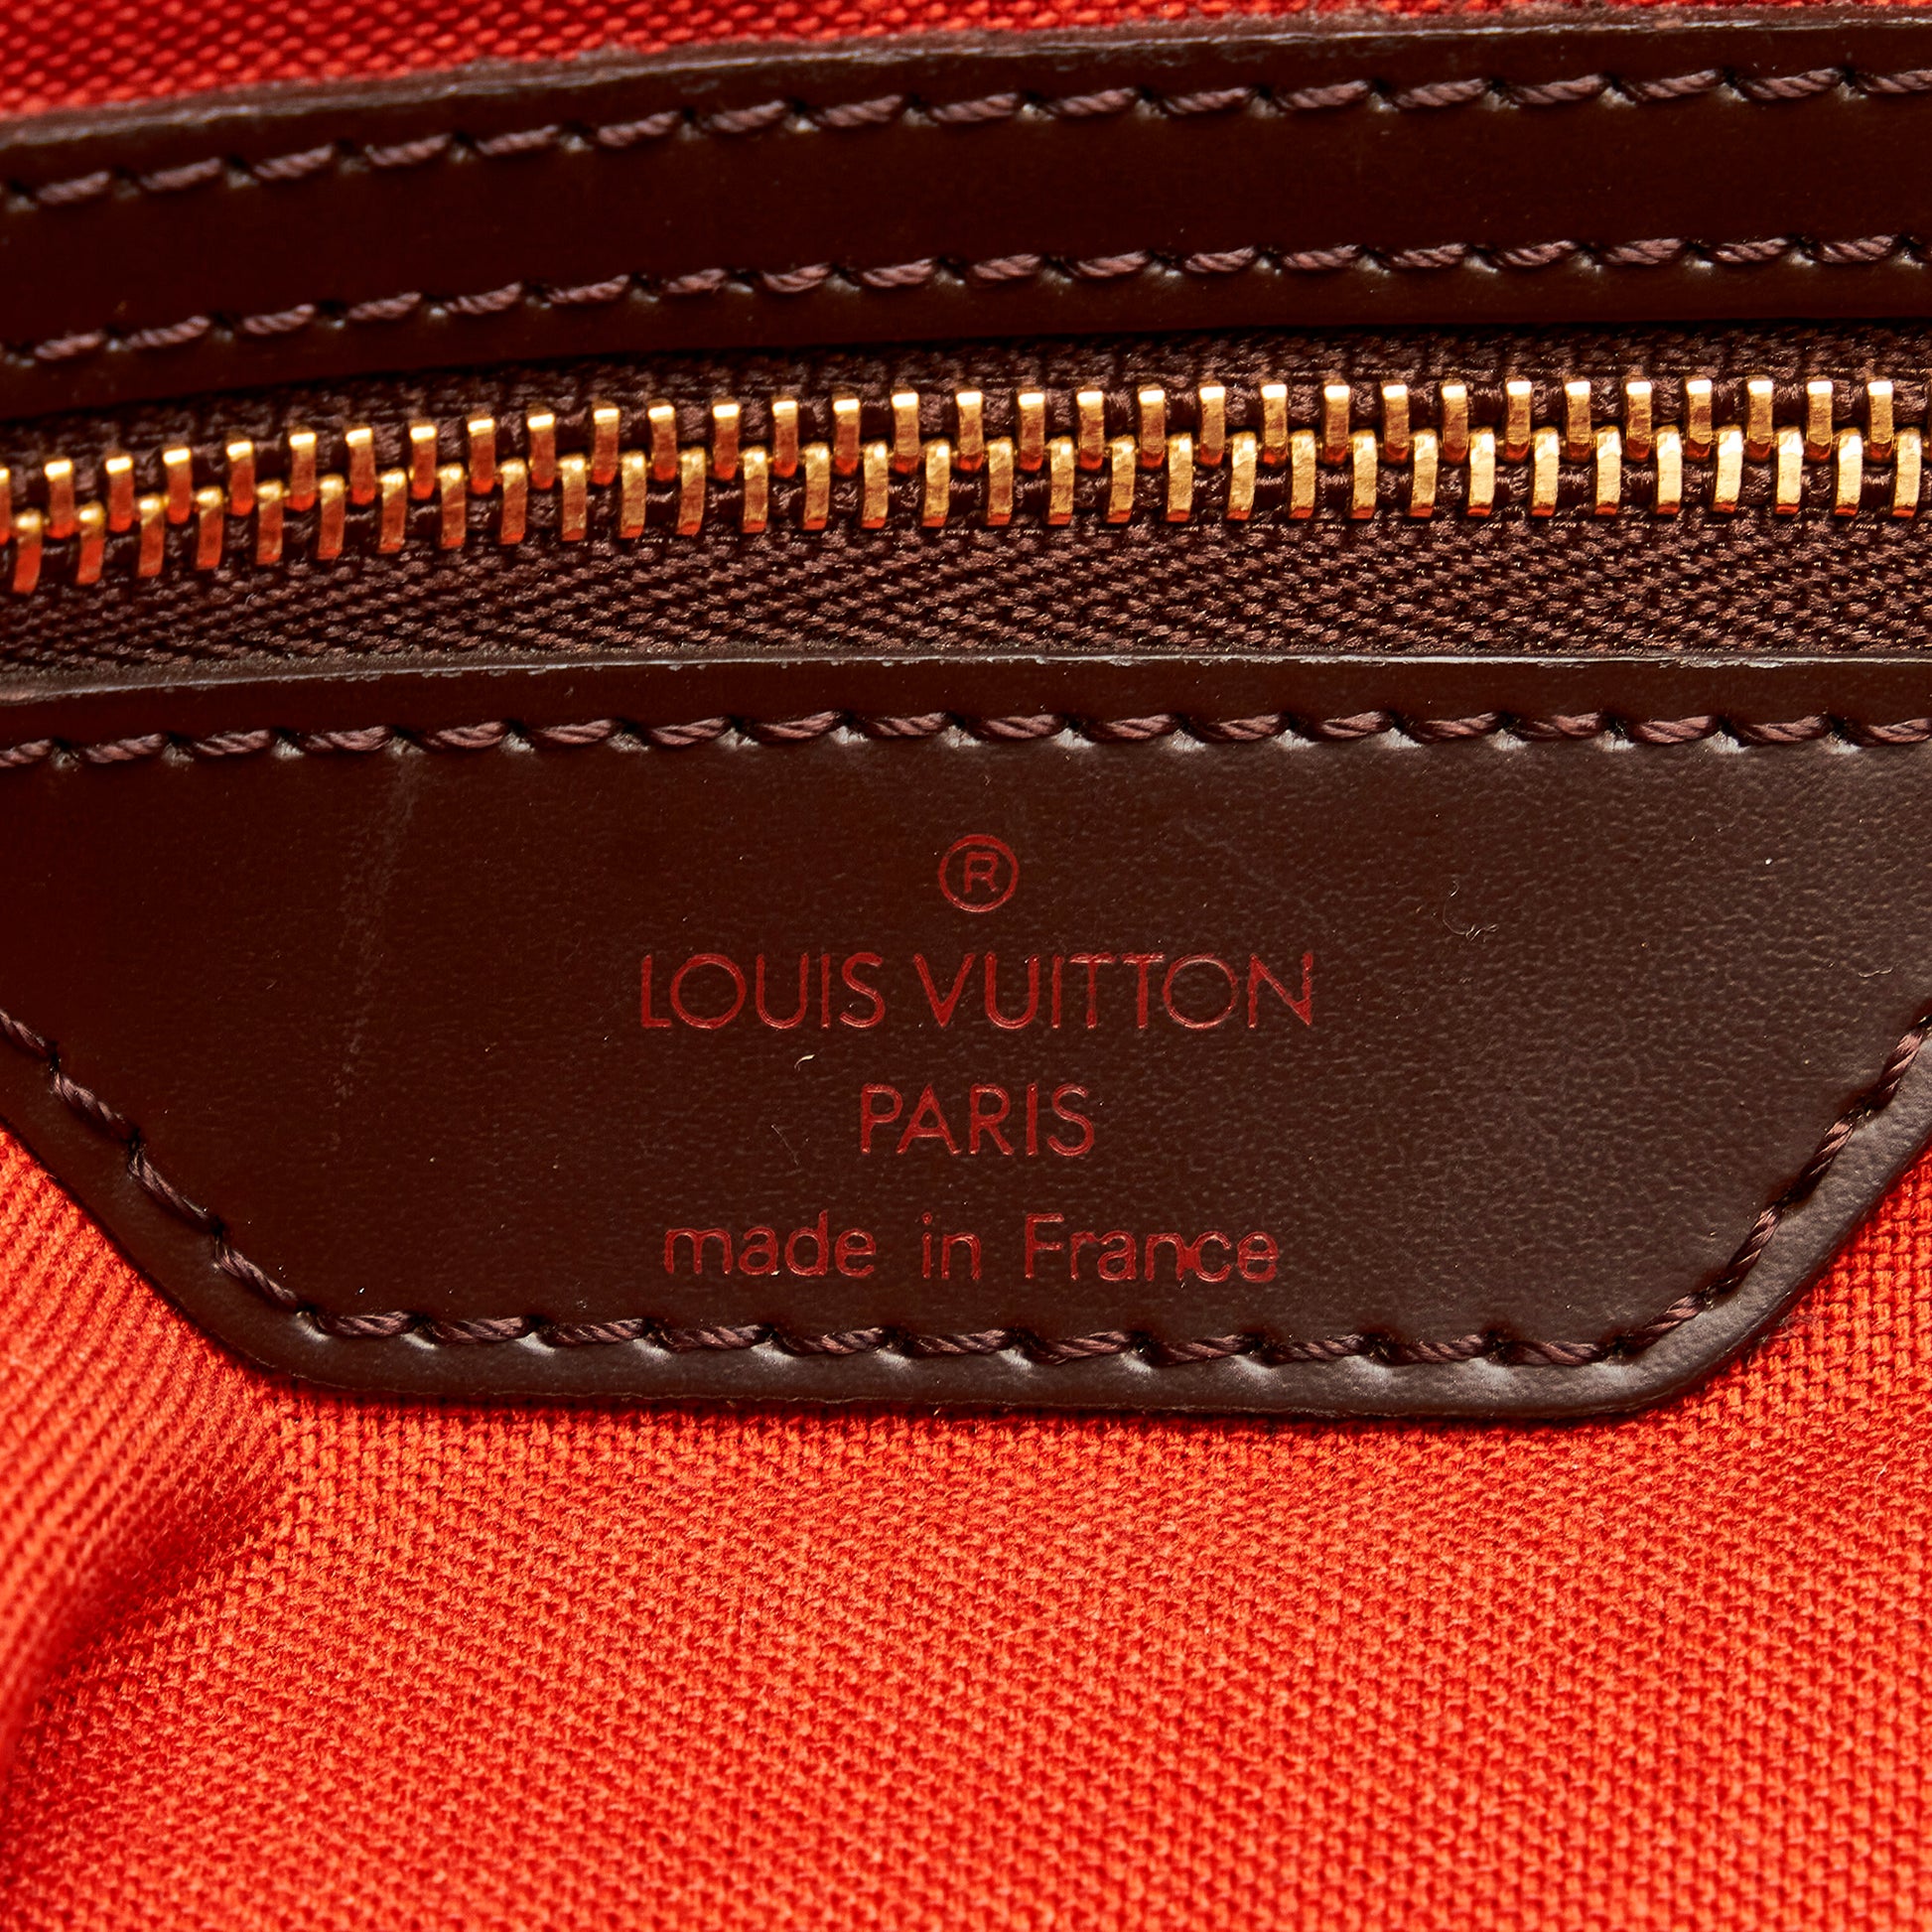 Louis Vuitton 2001 pre-owned Damier Ebène Chelsea Shoulder Bag - Farfetch